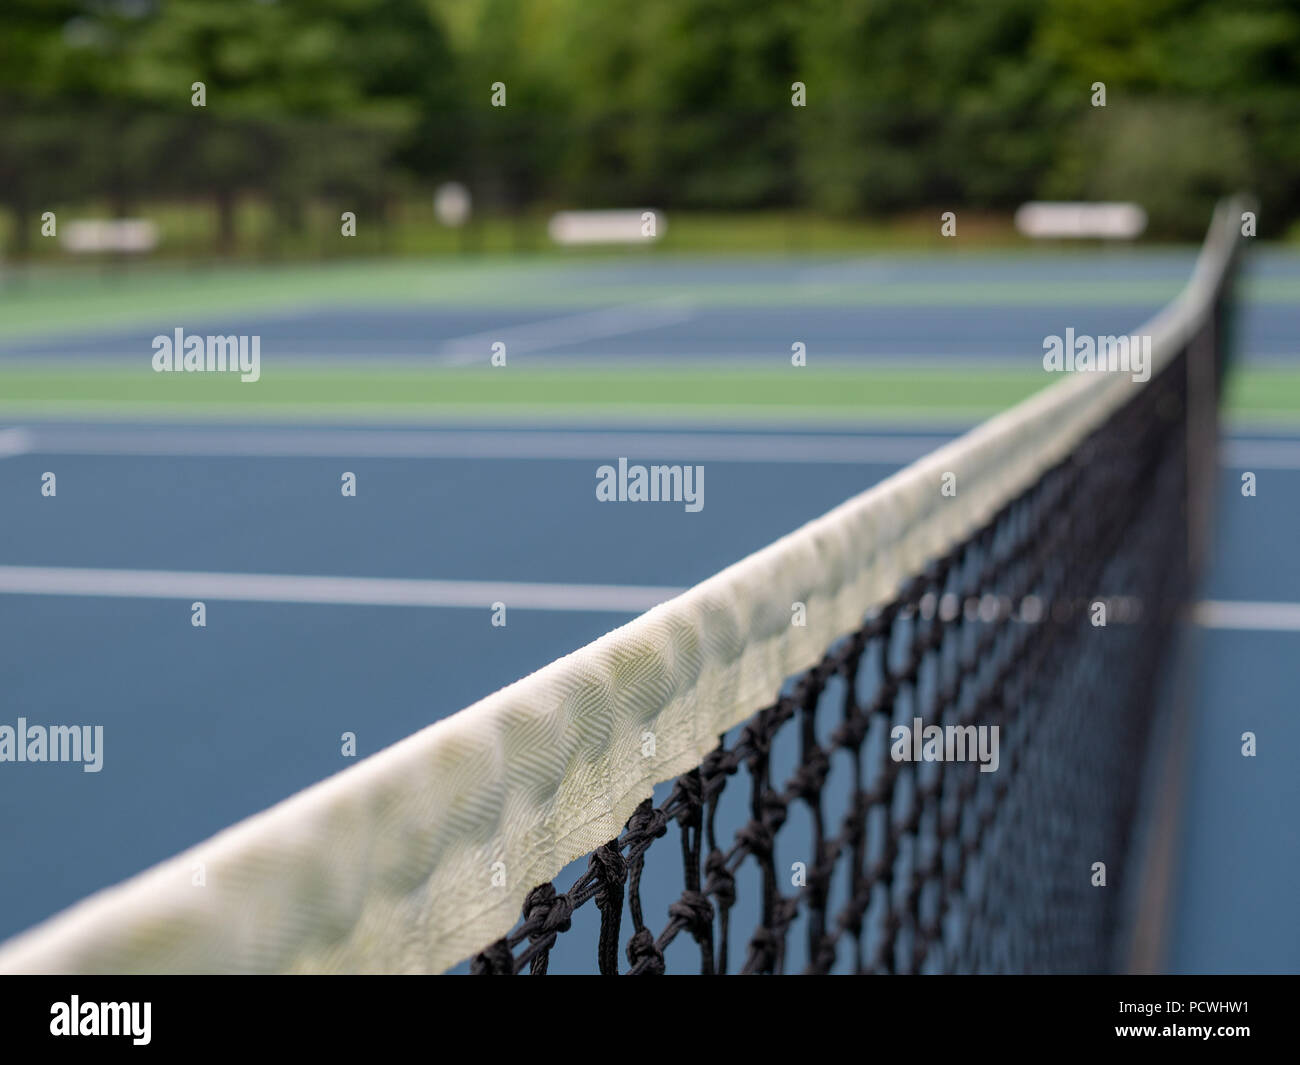 Close up of tennis net avec l'accent en net Banque D'Images